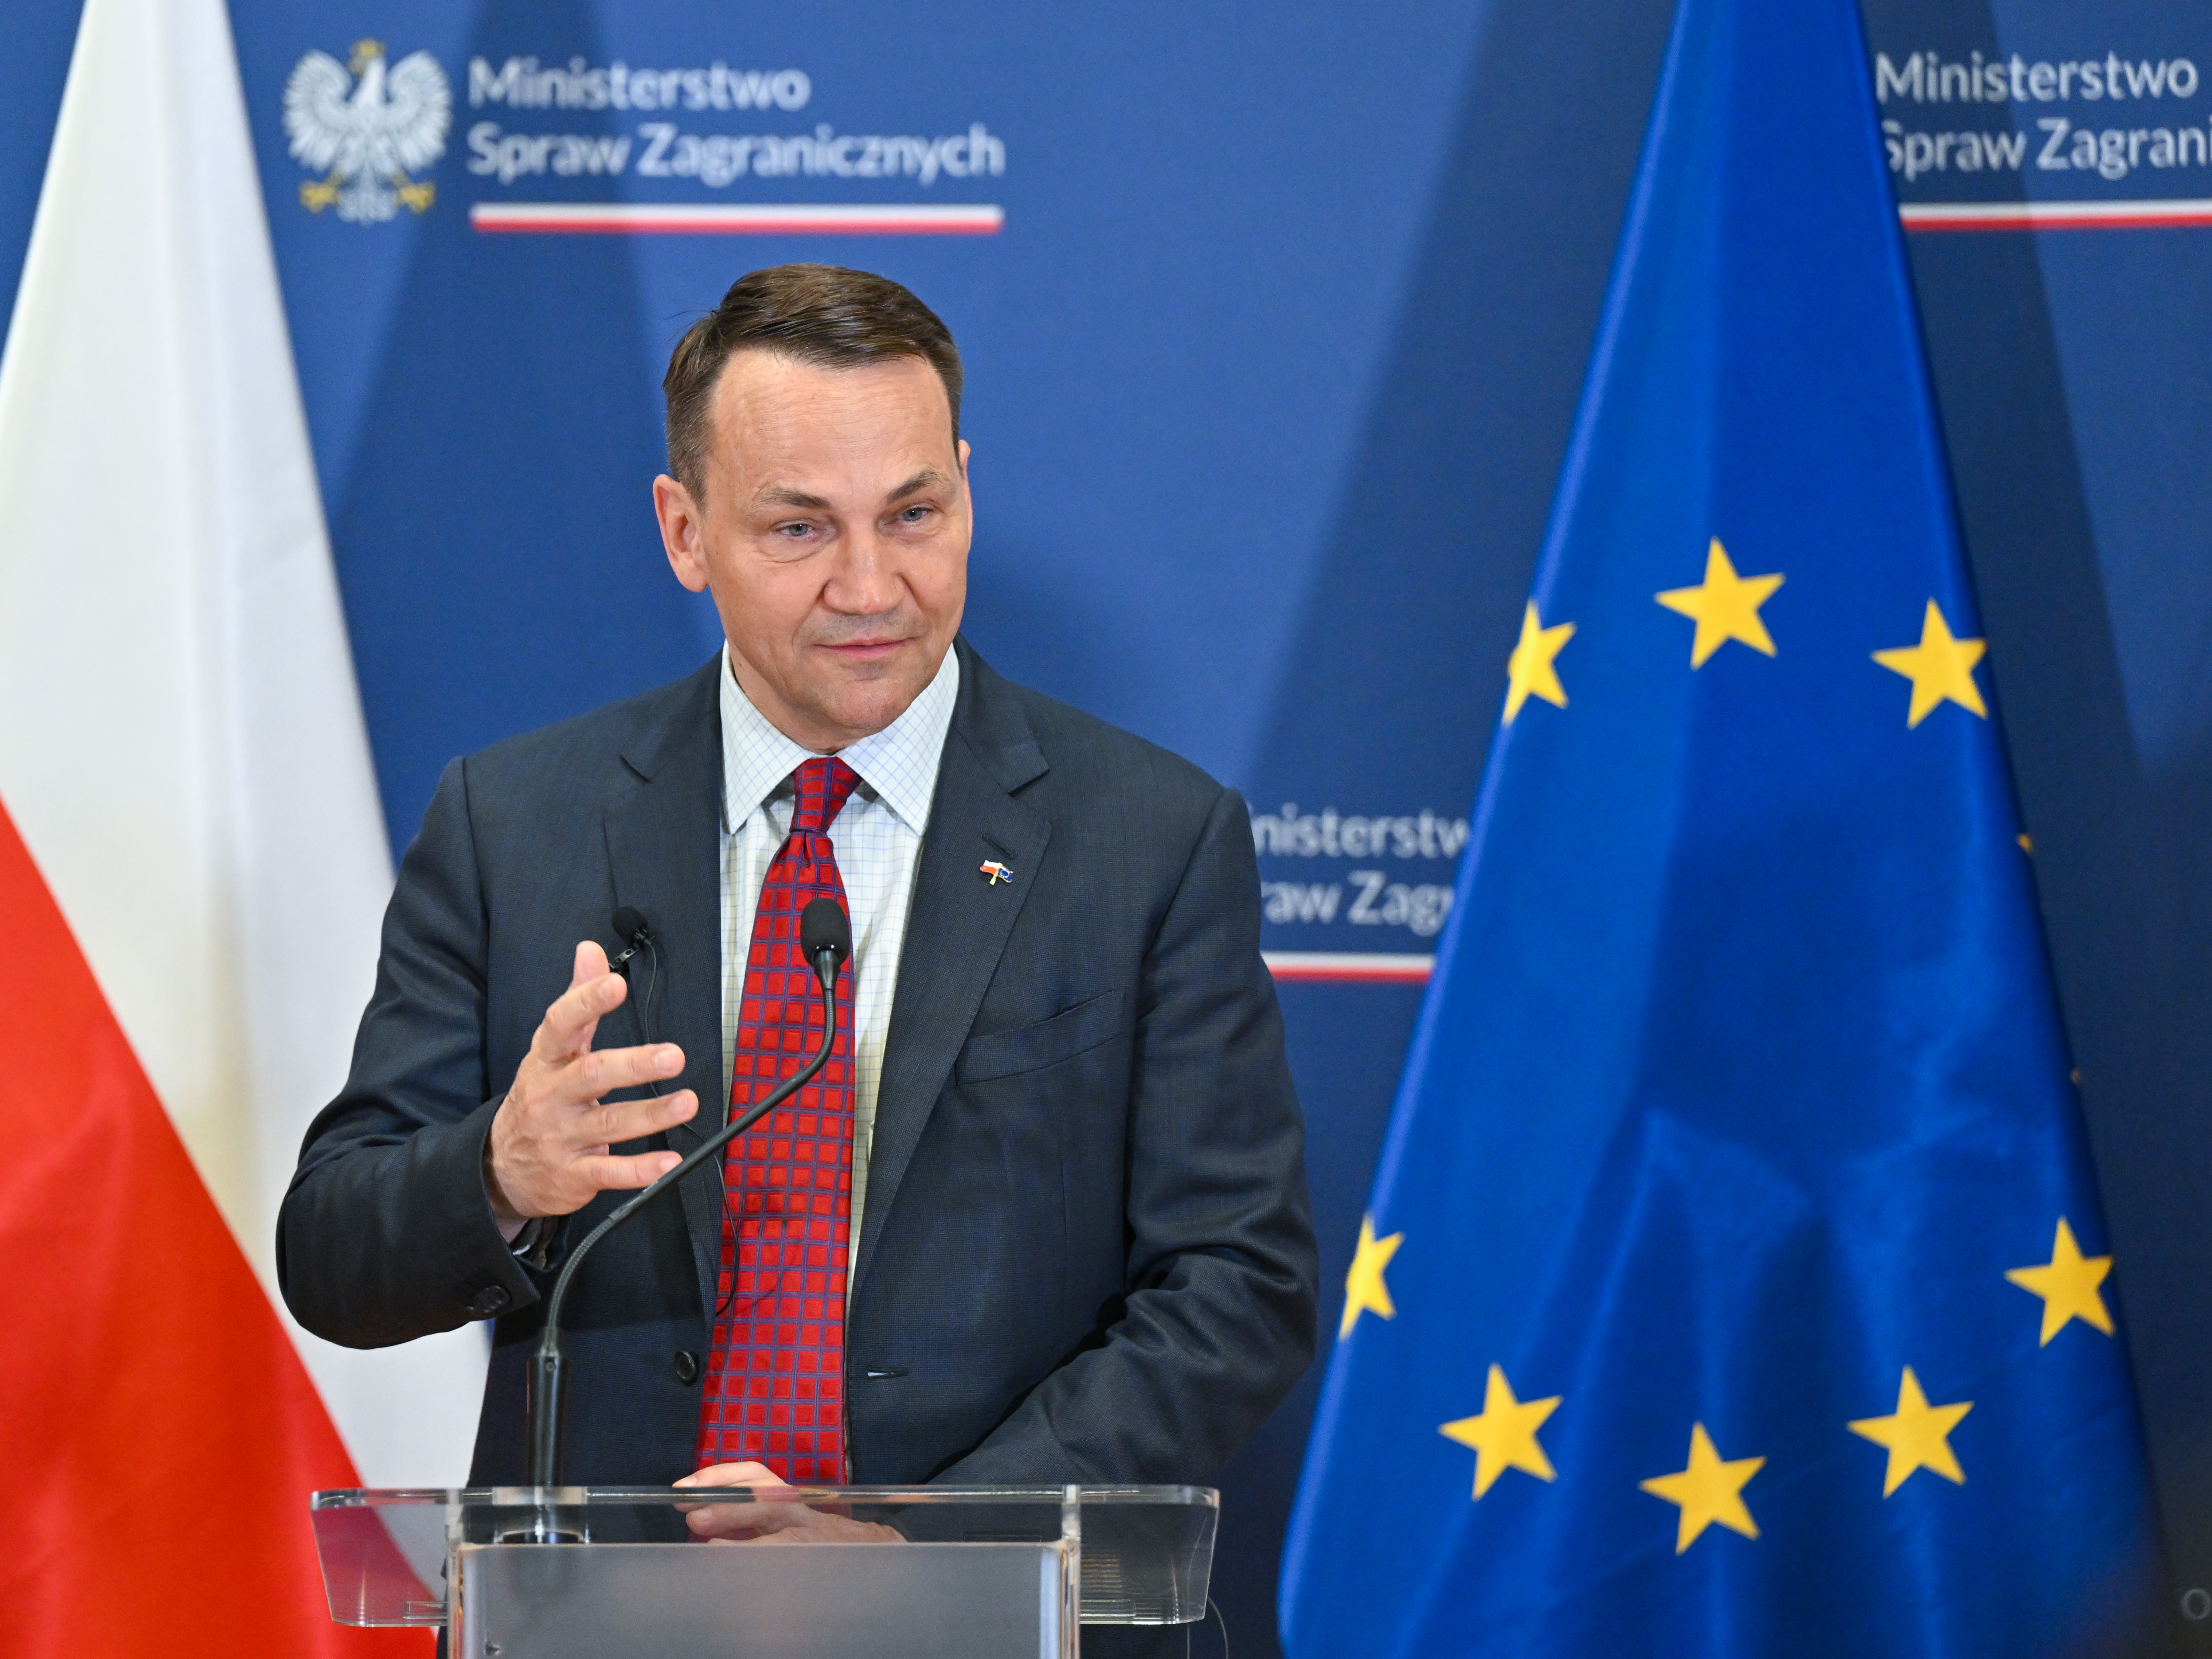 Polski minister: Krajowi zależy na jak najlepszych stosunkach ze Stanami Zjednoczonymi